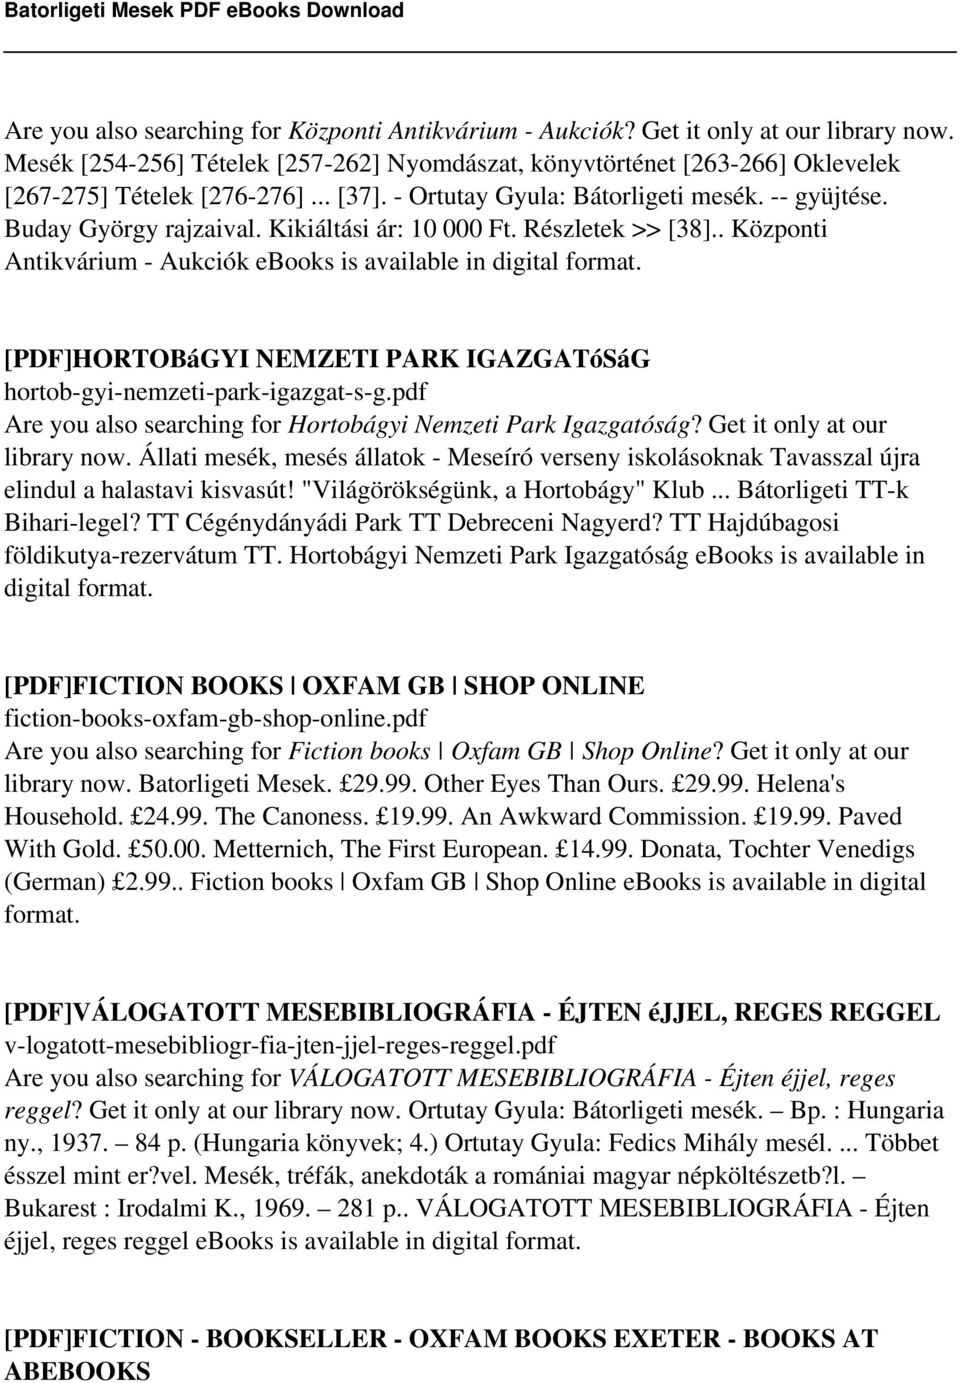 [PDF]HORTOBáGYI NEMZETI PARK IGAZGATóSáG hortob-gyi-nemzeti-park-igazgat-s-g.pdf Are you also searching for Hortobágyi Nemzeti Park Igazgatóság? Get it only at our library now.